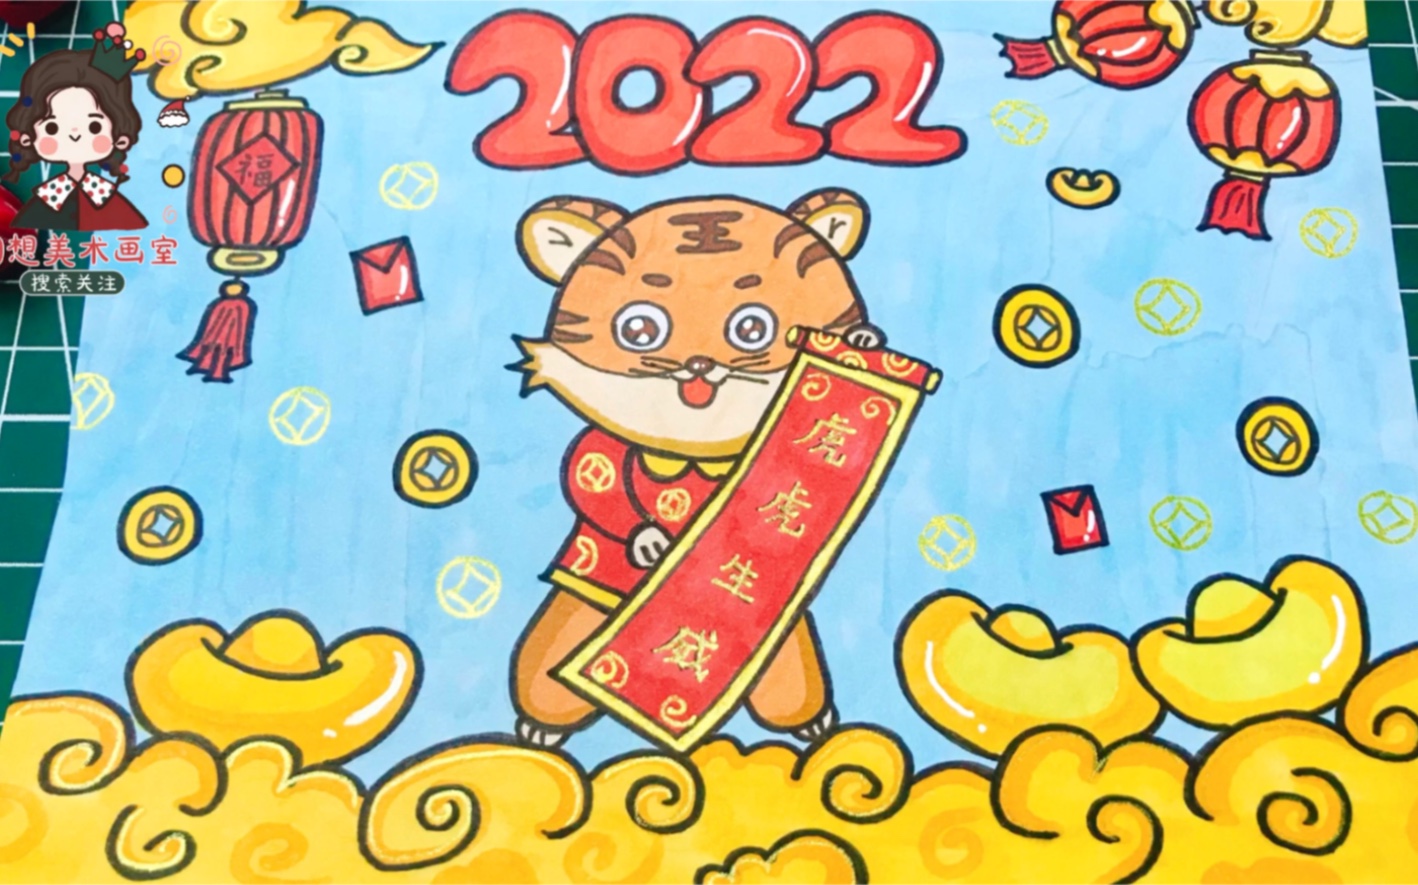 2022虎年主题儿童画,元旦主题绘画,新年快乐,虎虎生威!